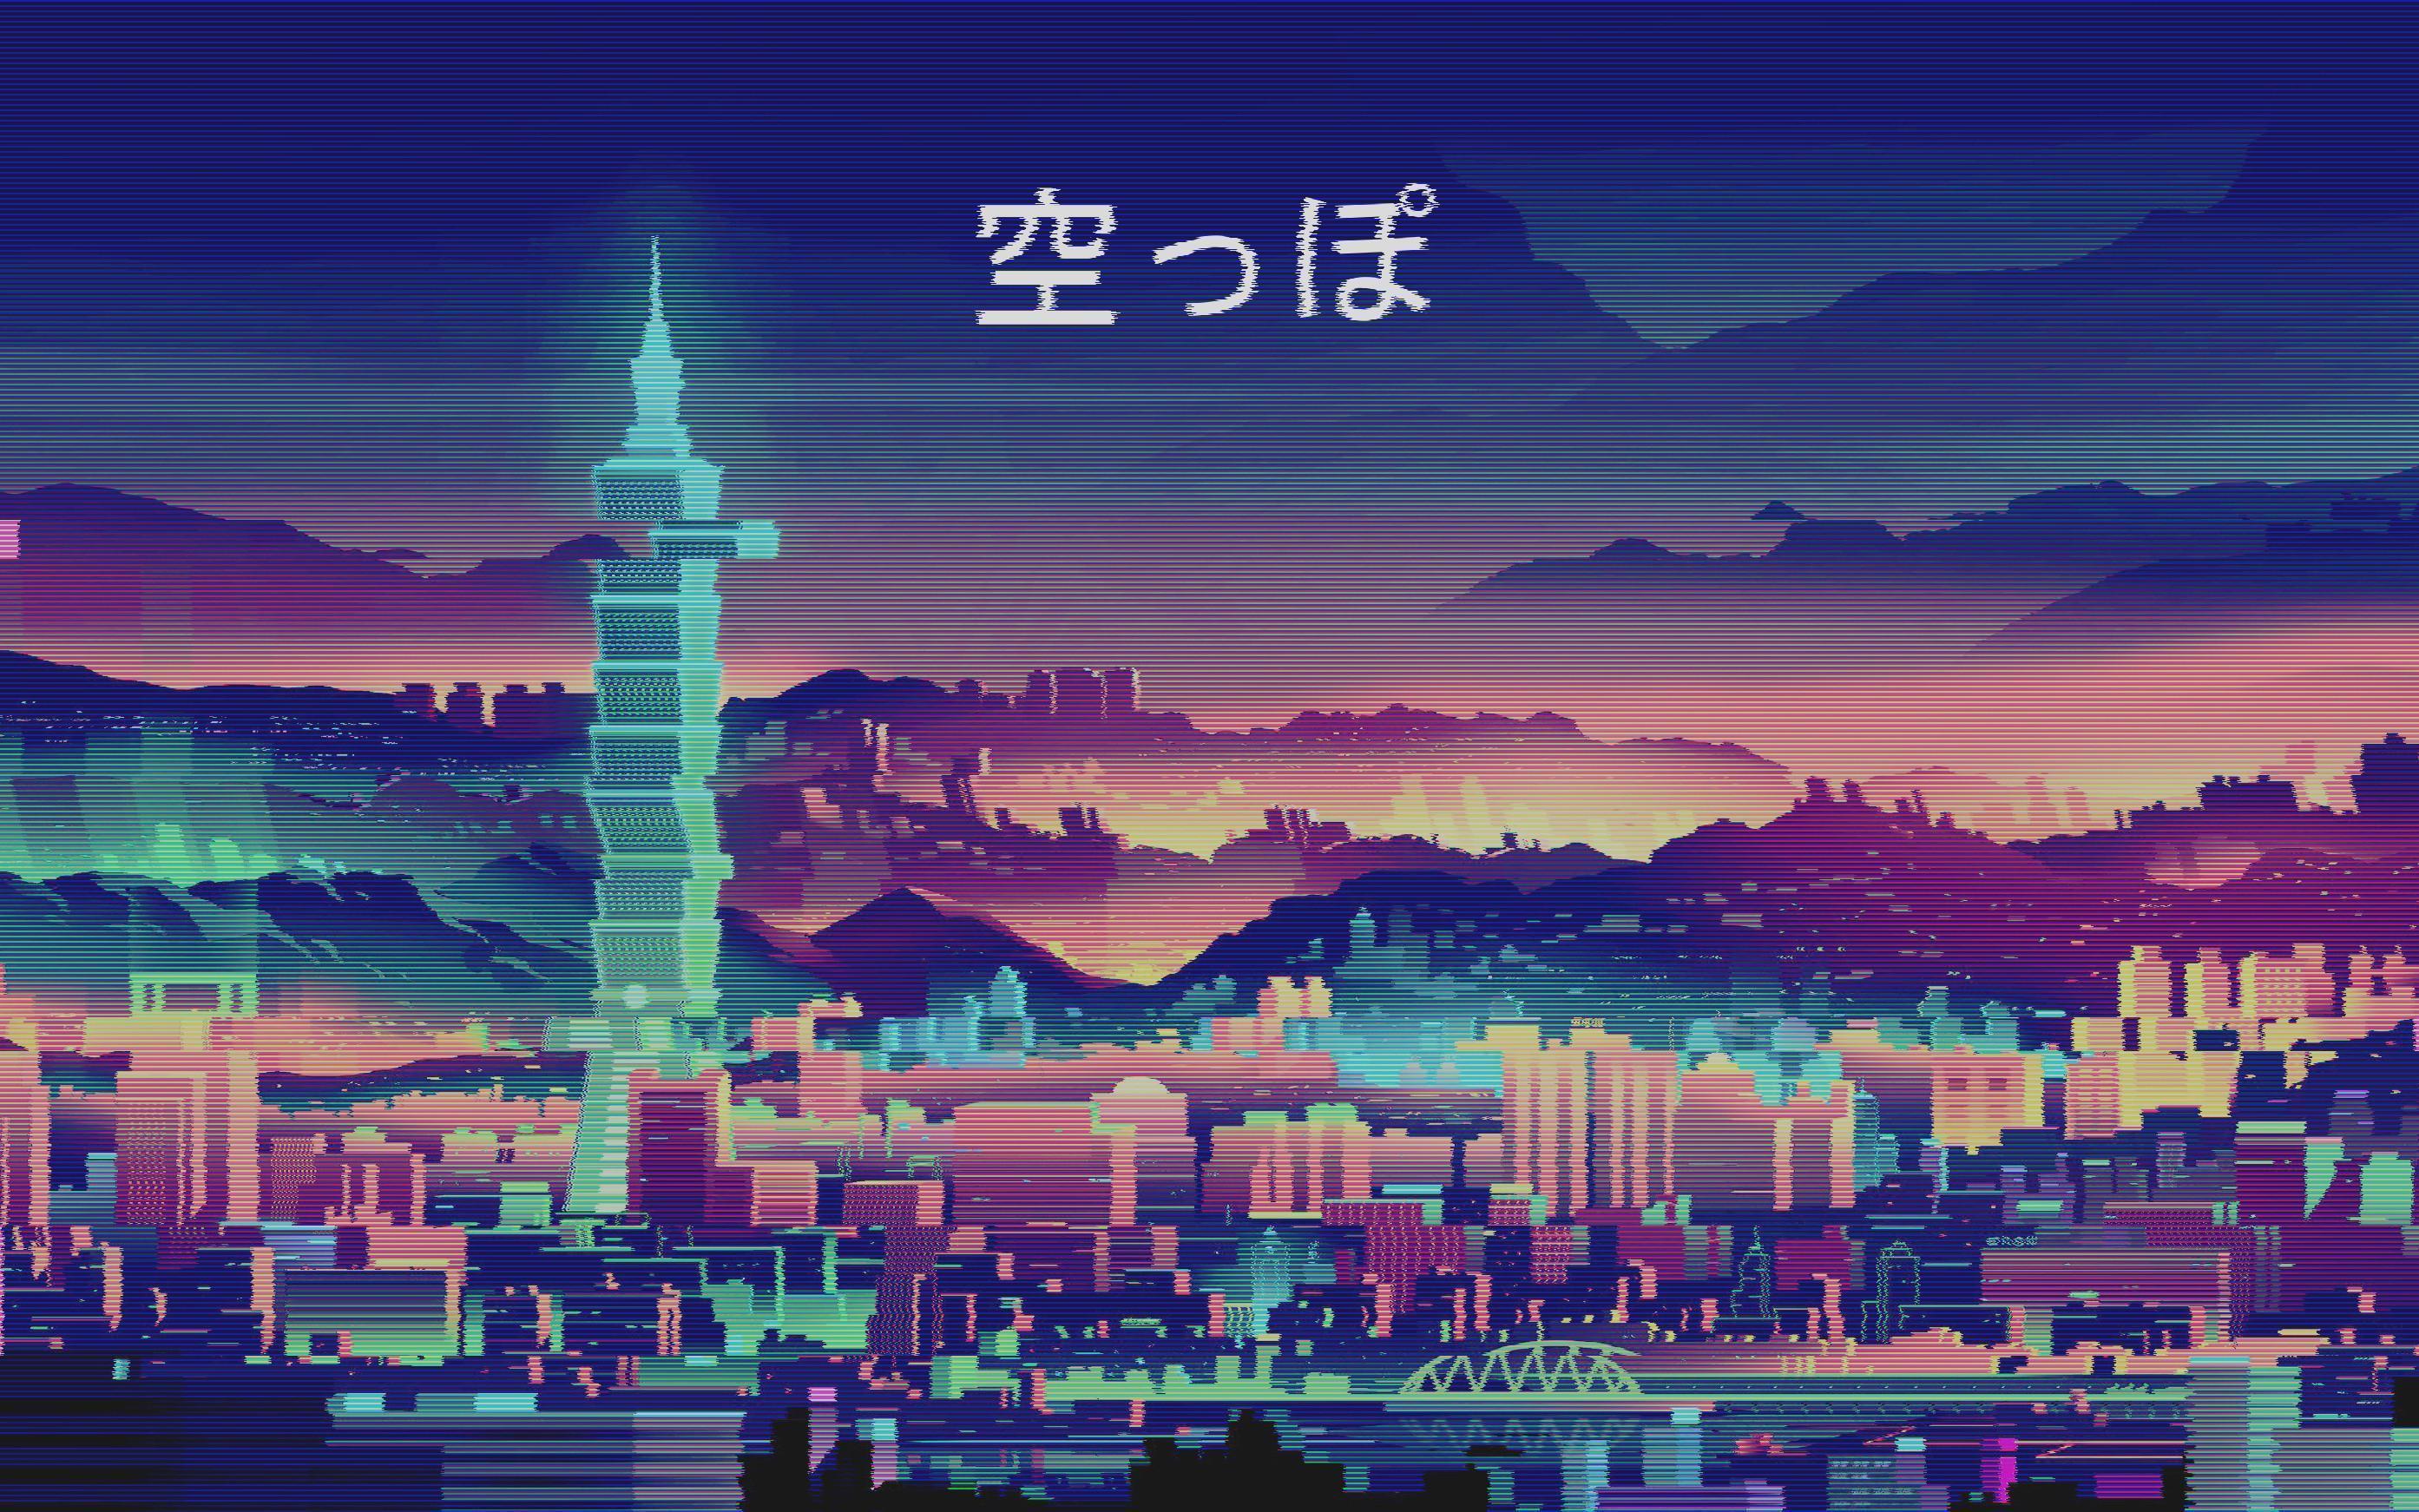 90s anime aesthetic wallpaper 4k by DarkEdgeYT on DeviantArt